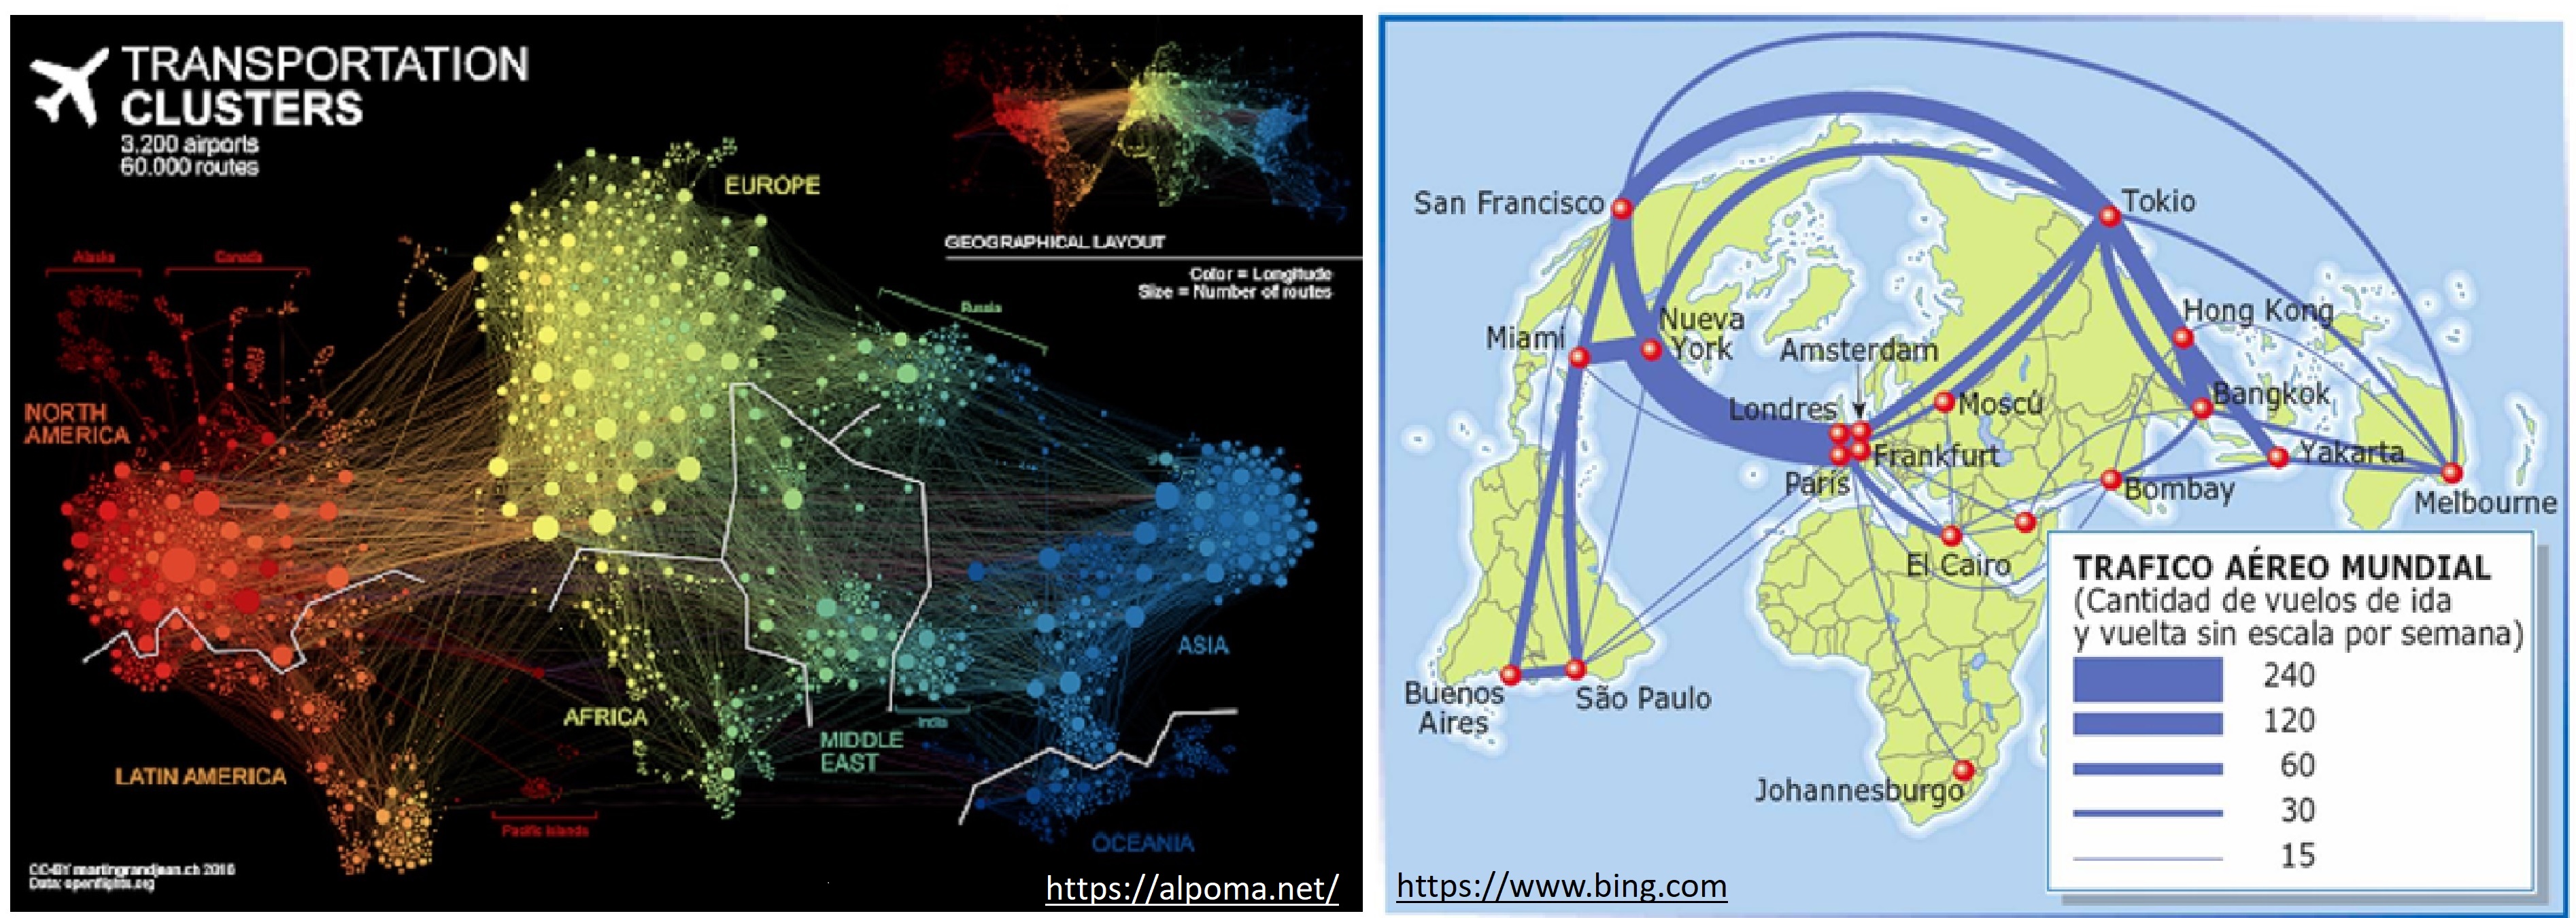 Clusteres y tráfico aero mundial